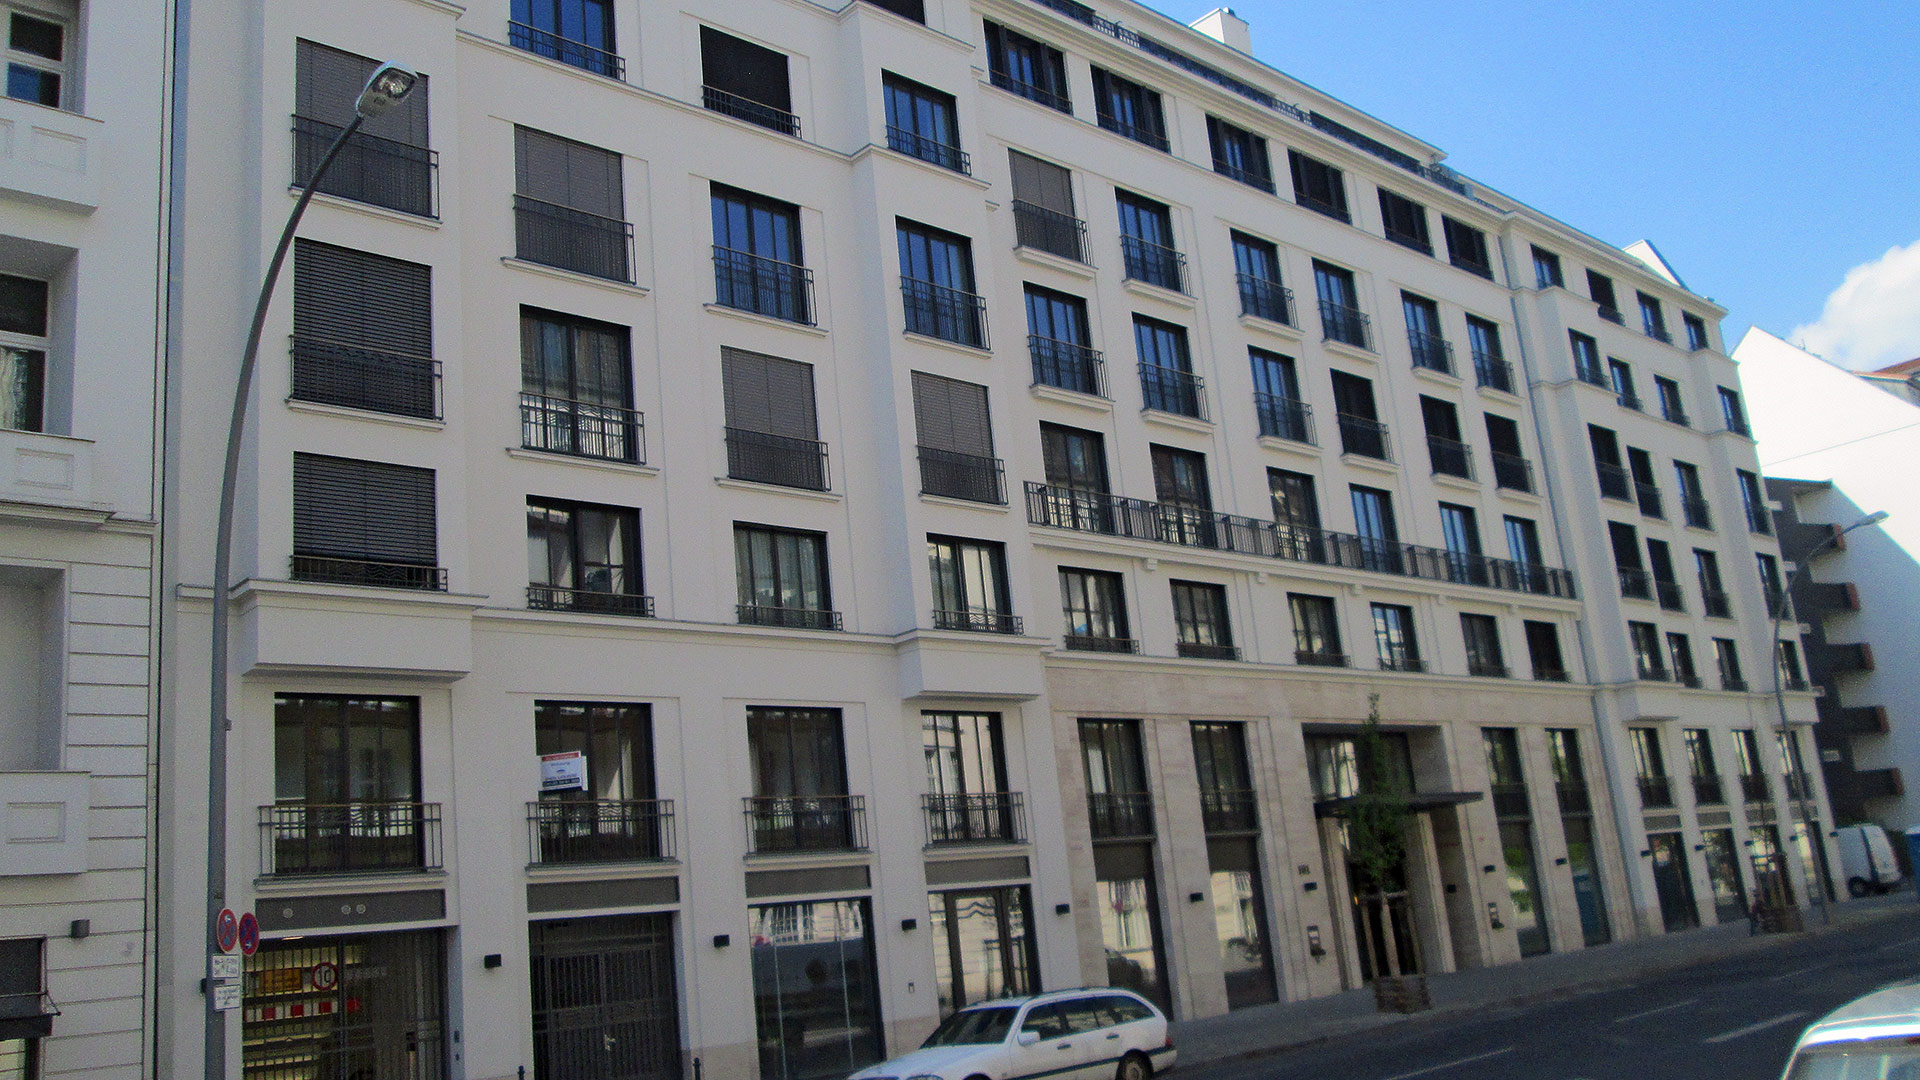 Ansicht Aussenfassade an der Lietzenburger Straße . Neubau eines Mehrfamilienhauses in Berlin